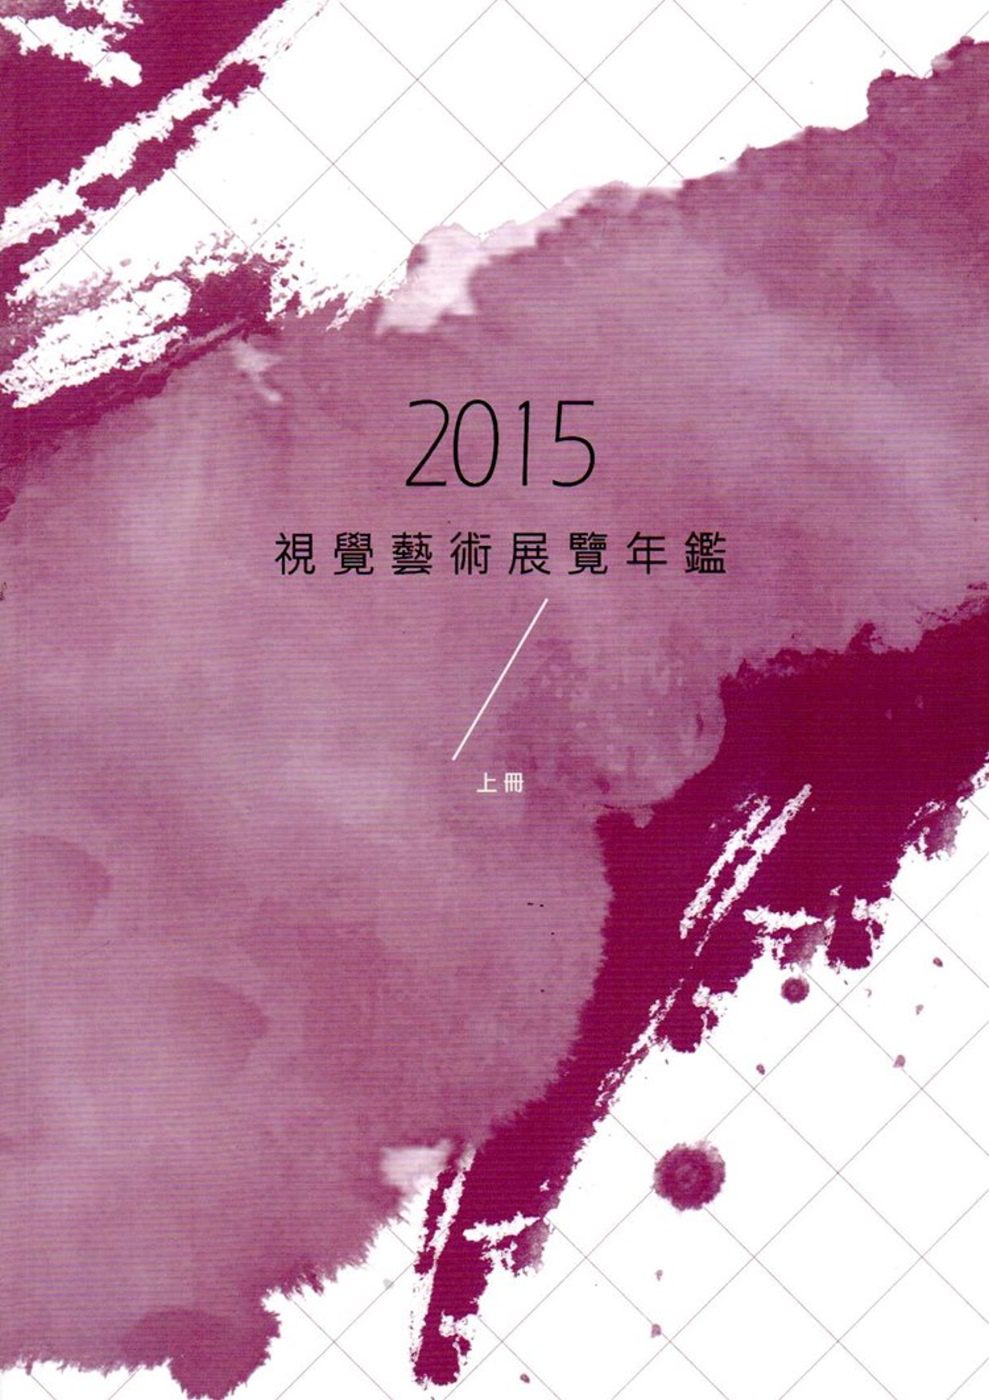 2015視覺藝術展覽年鑑(上冊)